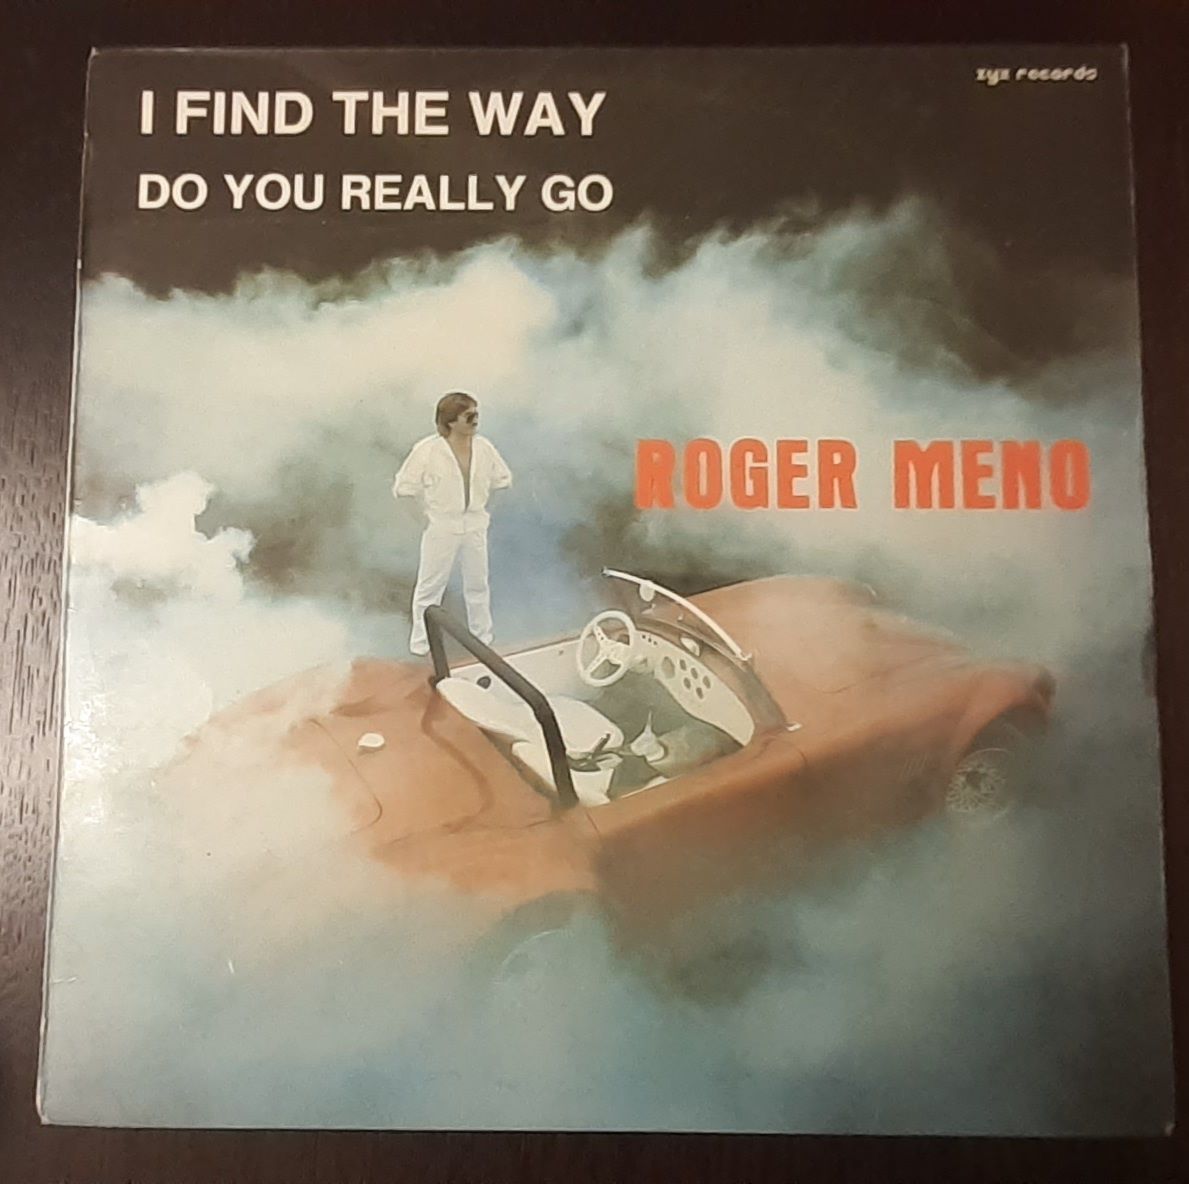 Roger Meno - I find the way maxi winyl